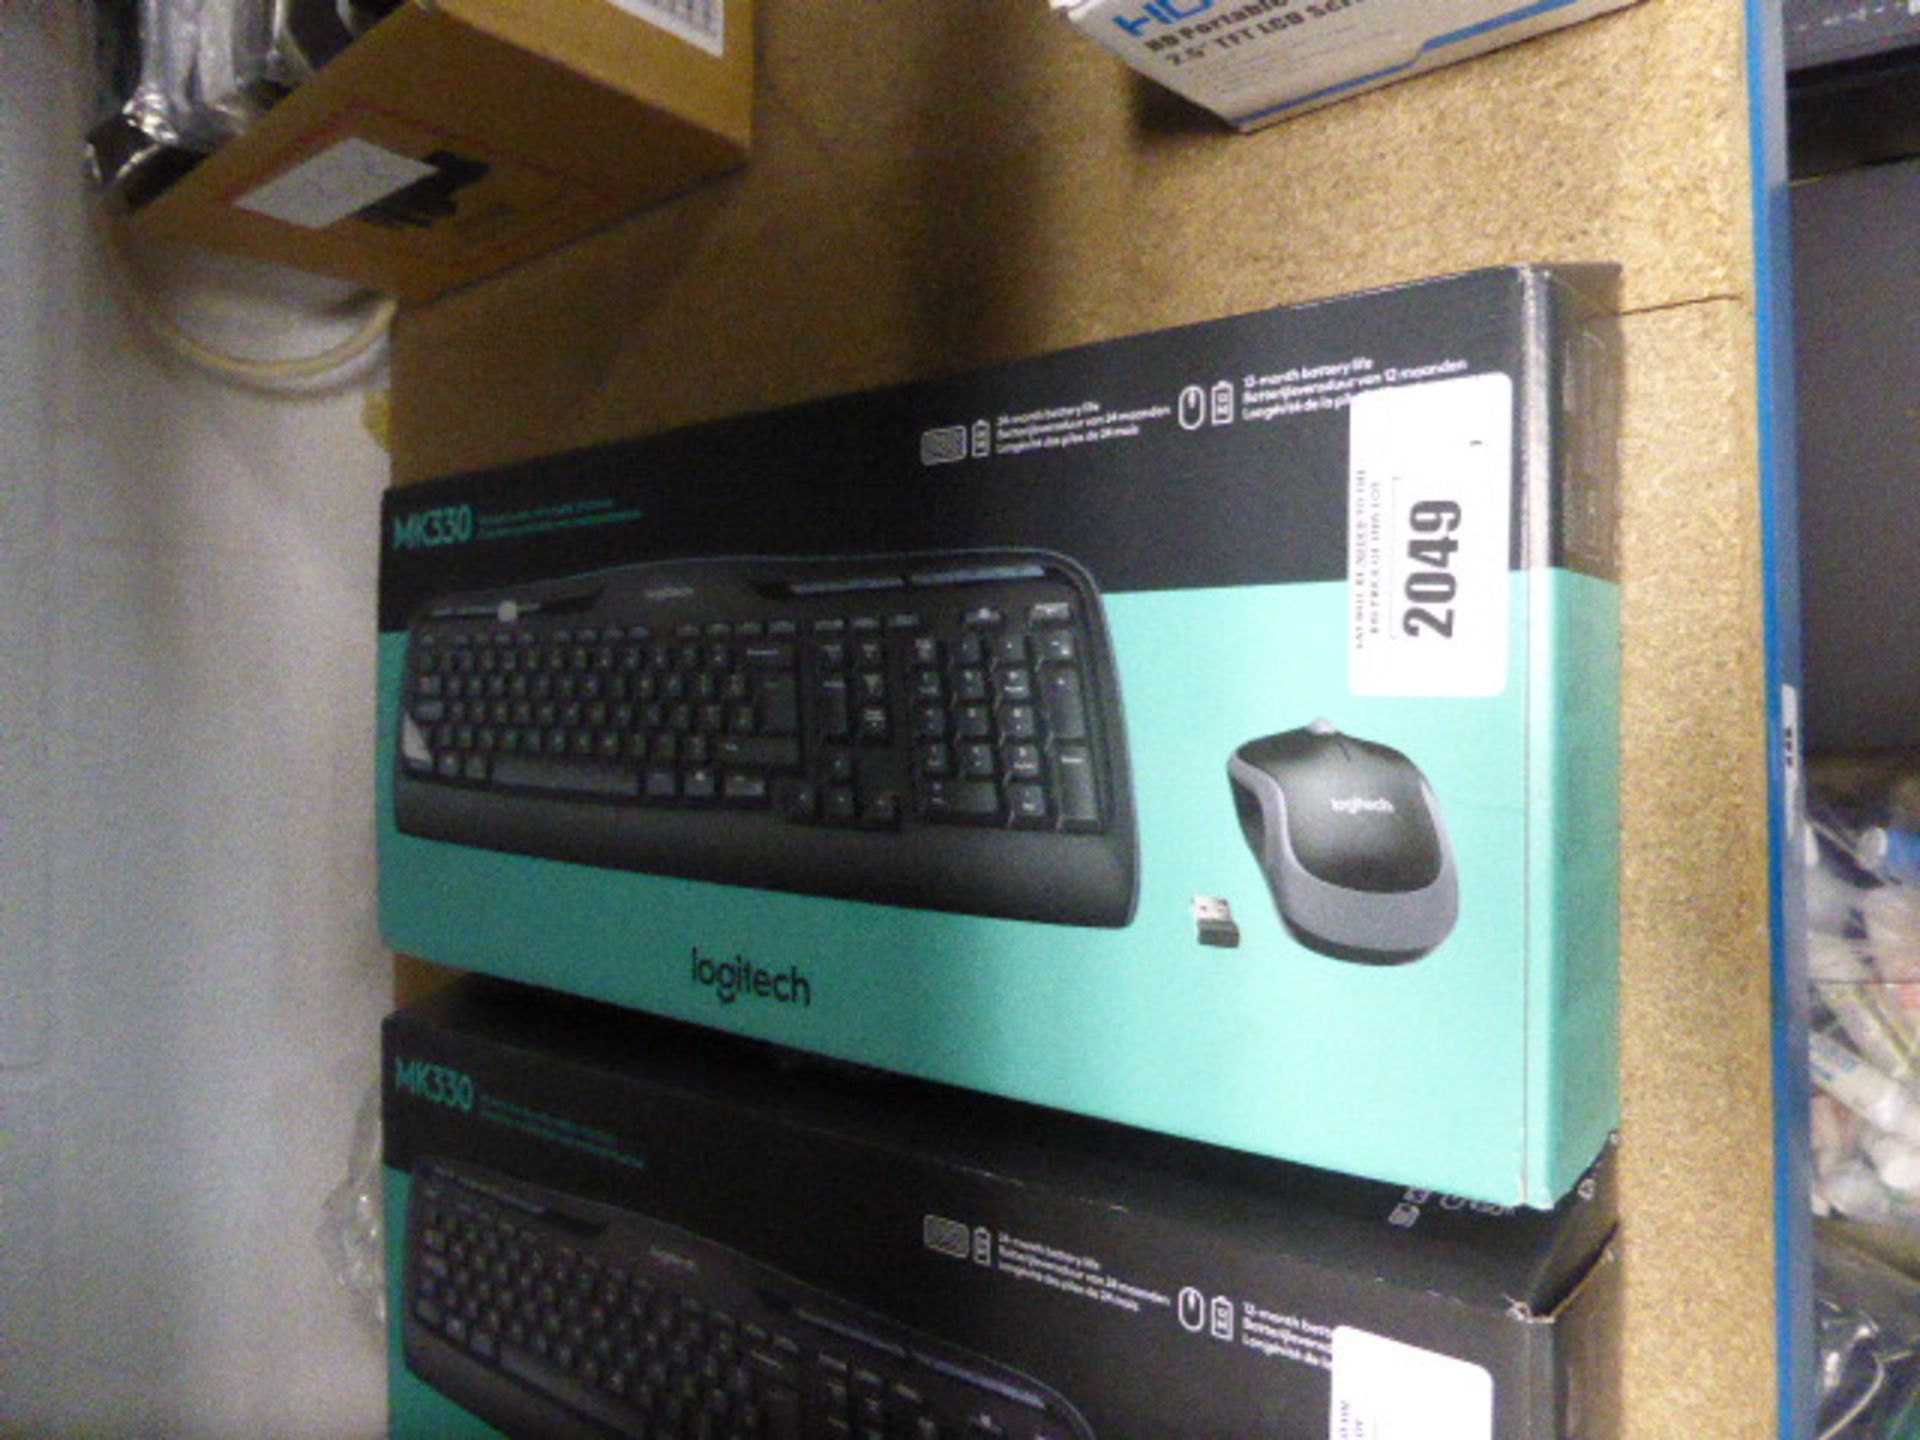 Logitech MK330 wireless keyboard combo set in box